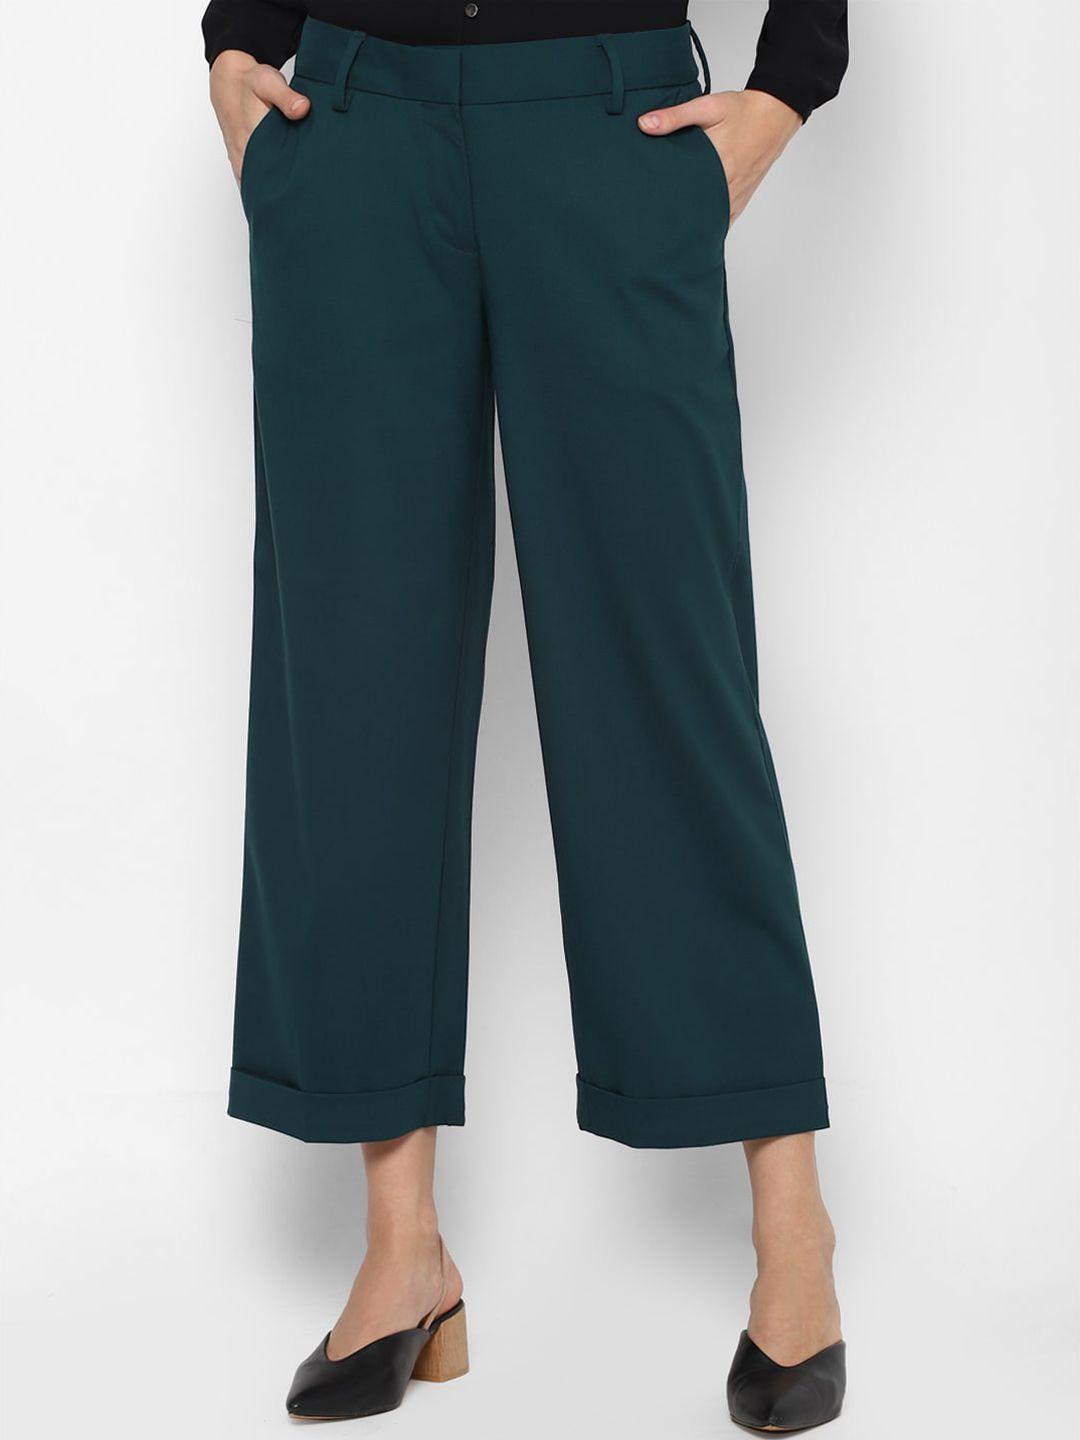 allen-solly-woman-women-green-culottes-trousers